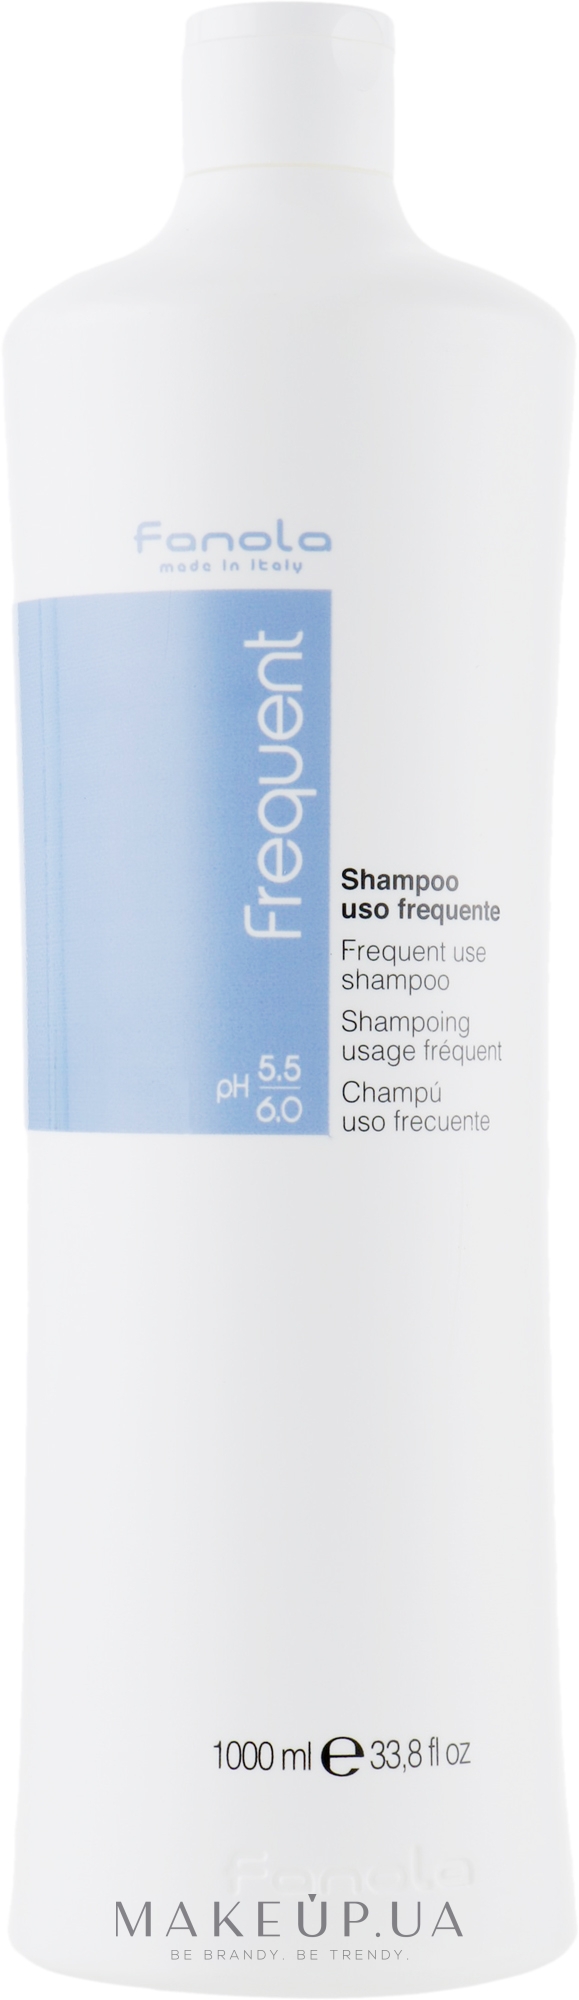 Шампунь для частого использования - Fanola Frequent Use Shampoo — фото 1000ml